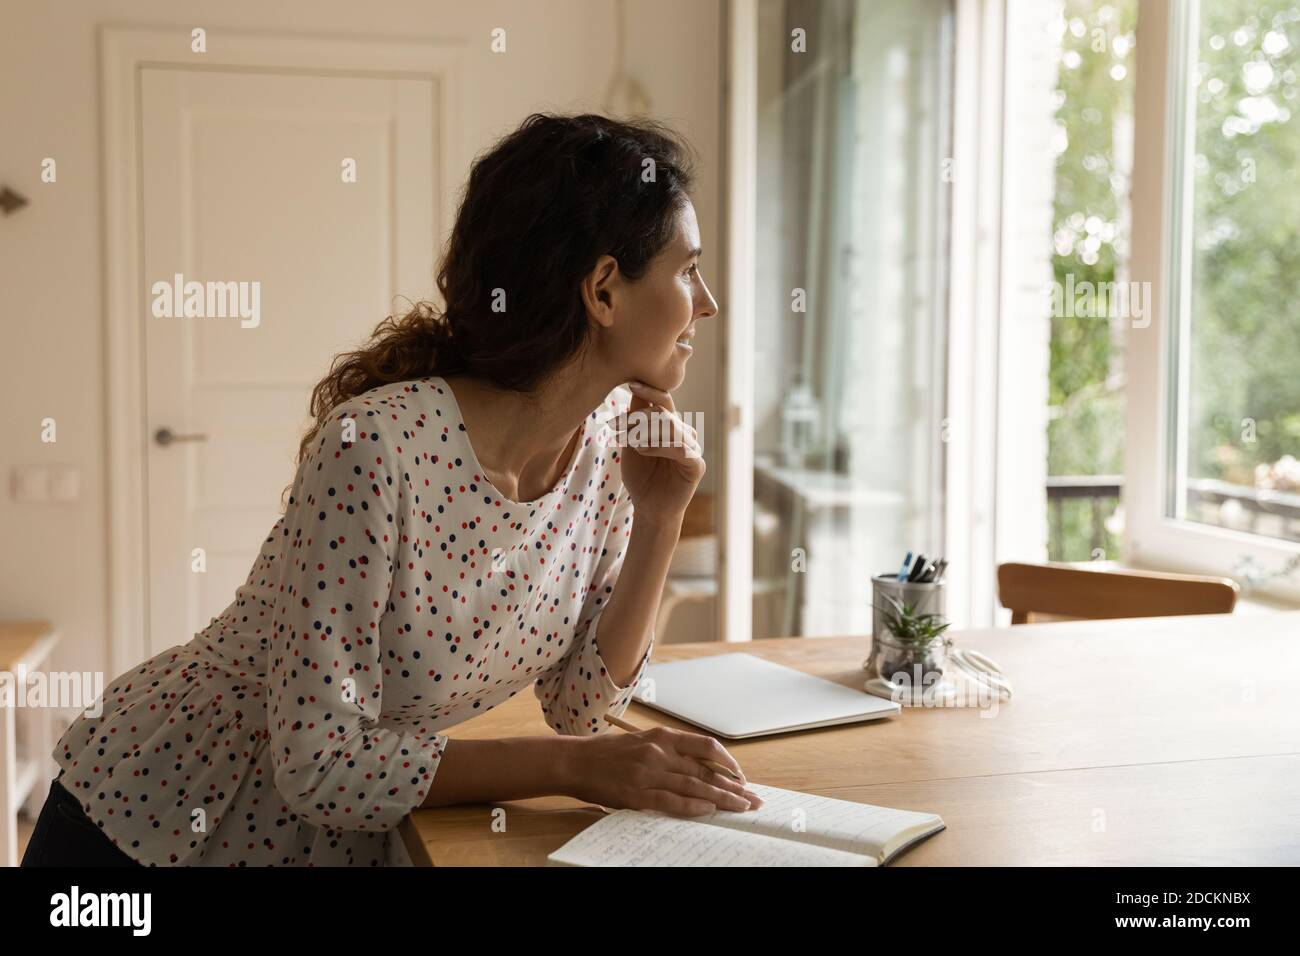 Une femme rêveuse prend des notes lors de la planification d'ordinateurs portables à la maison Banque D'Images